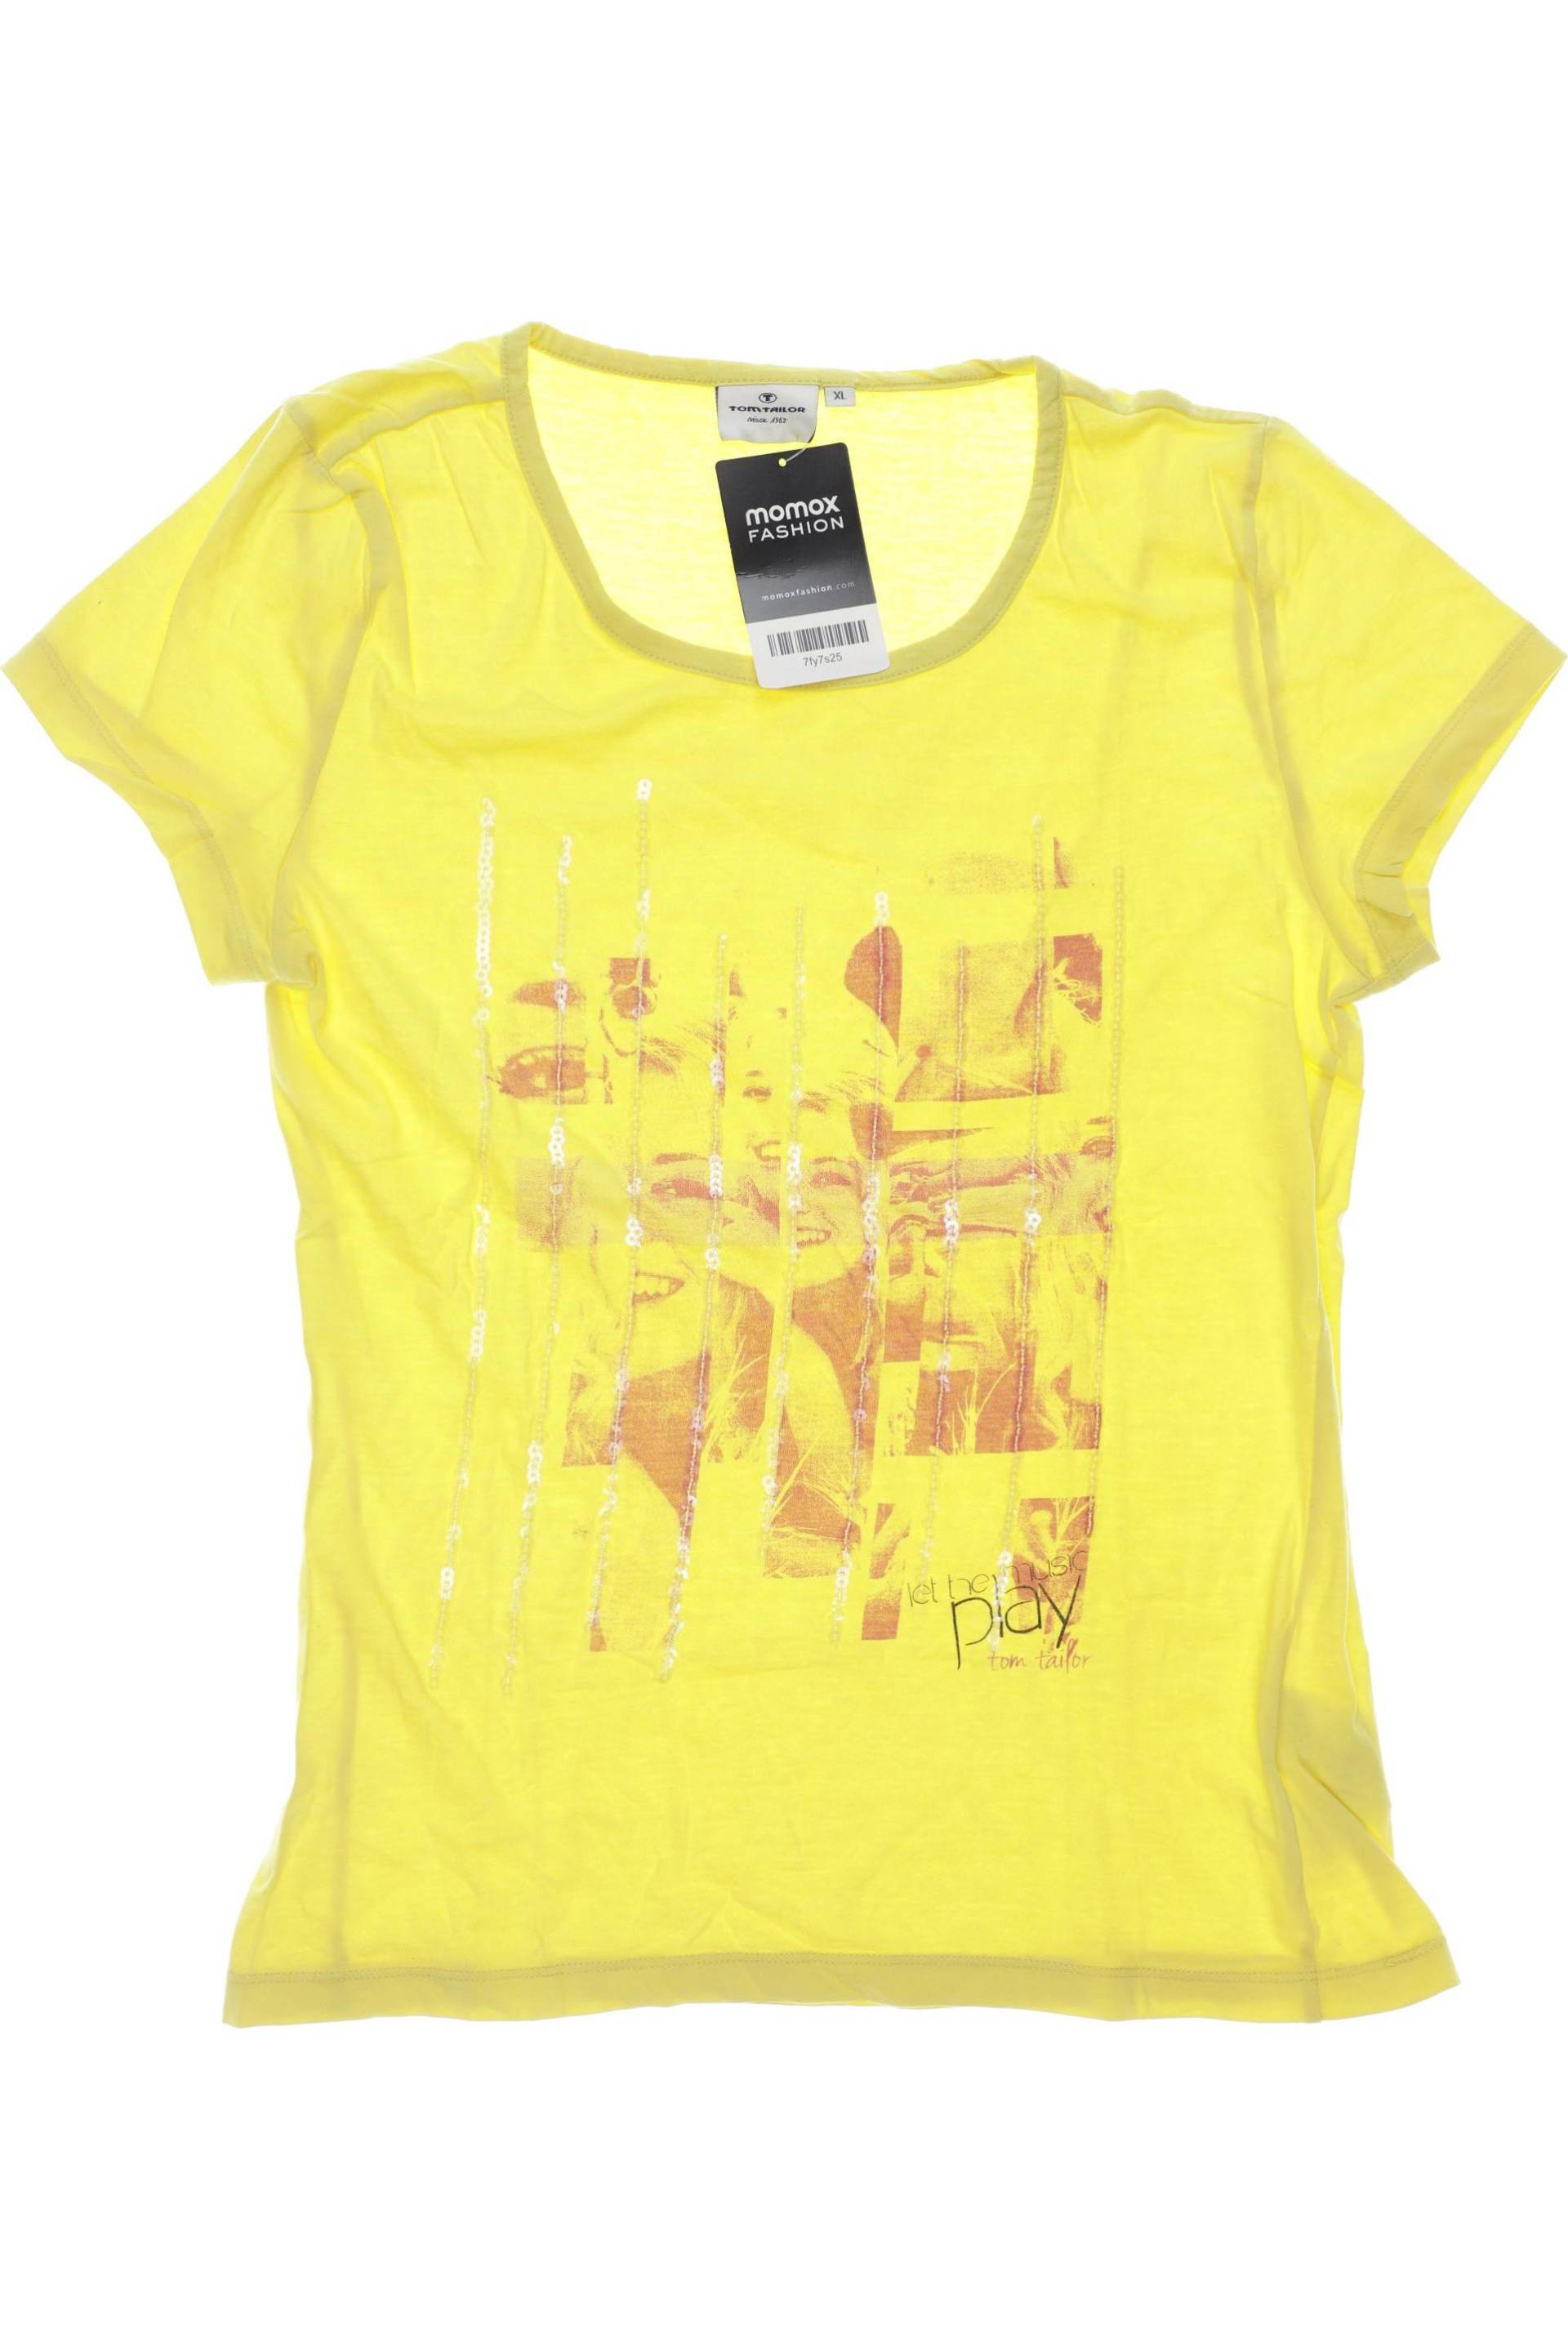 Tom Tailor Mädchen T-Shirt, gelb von Tom Tailor